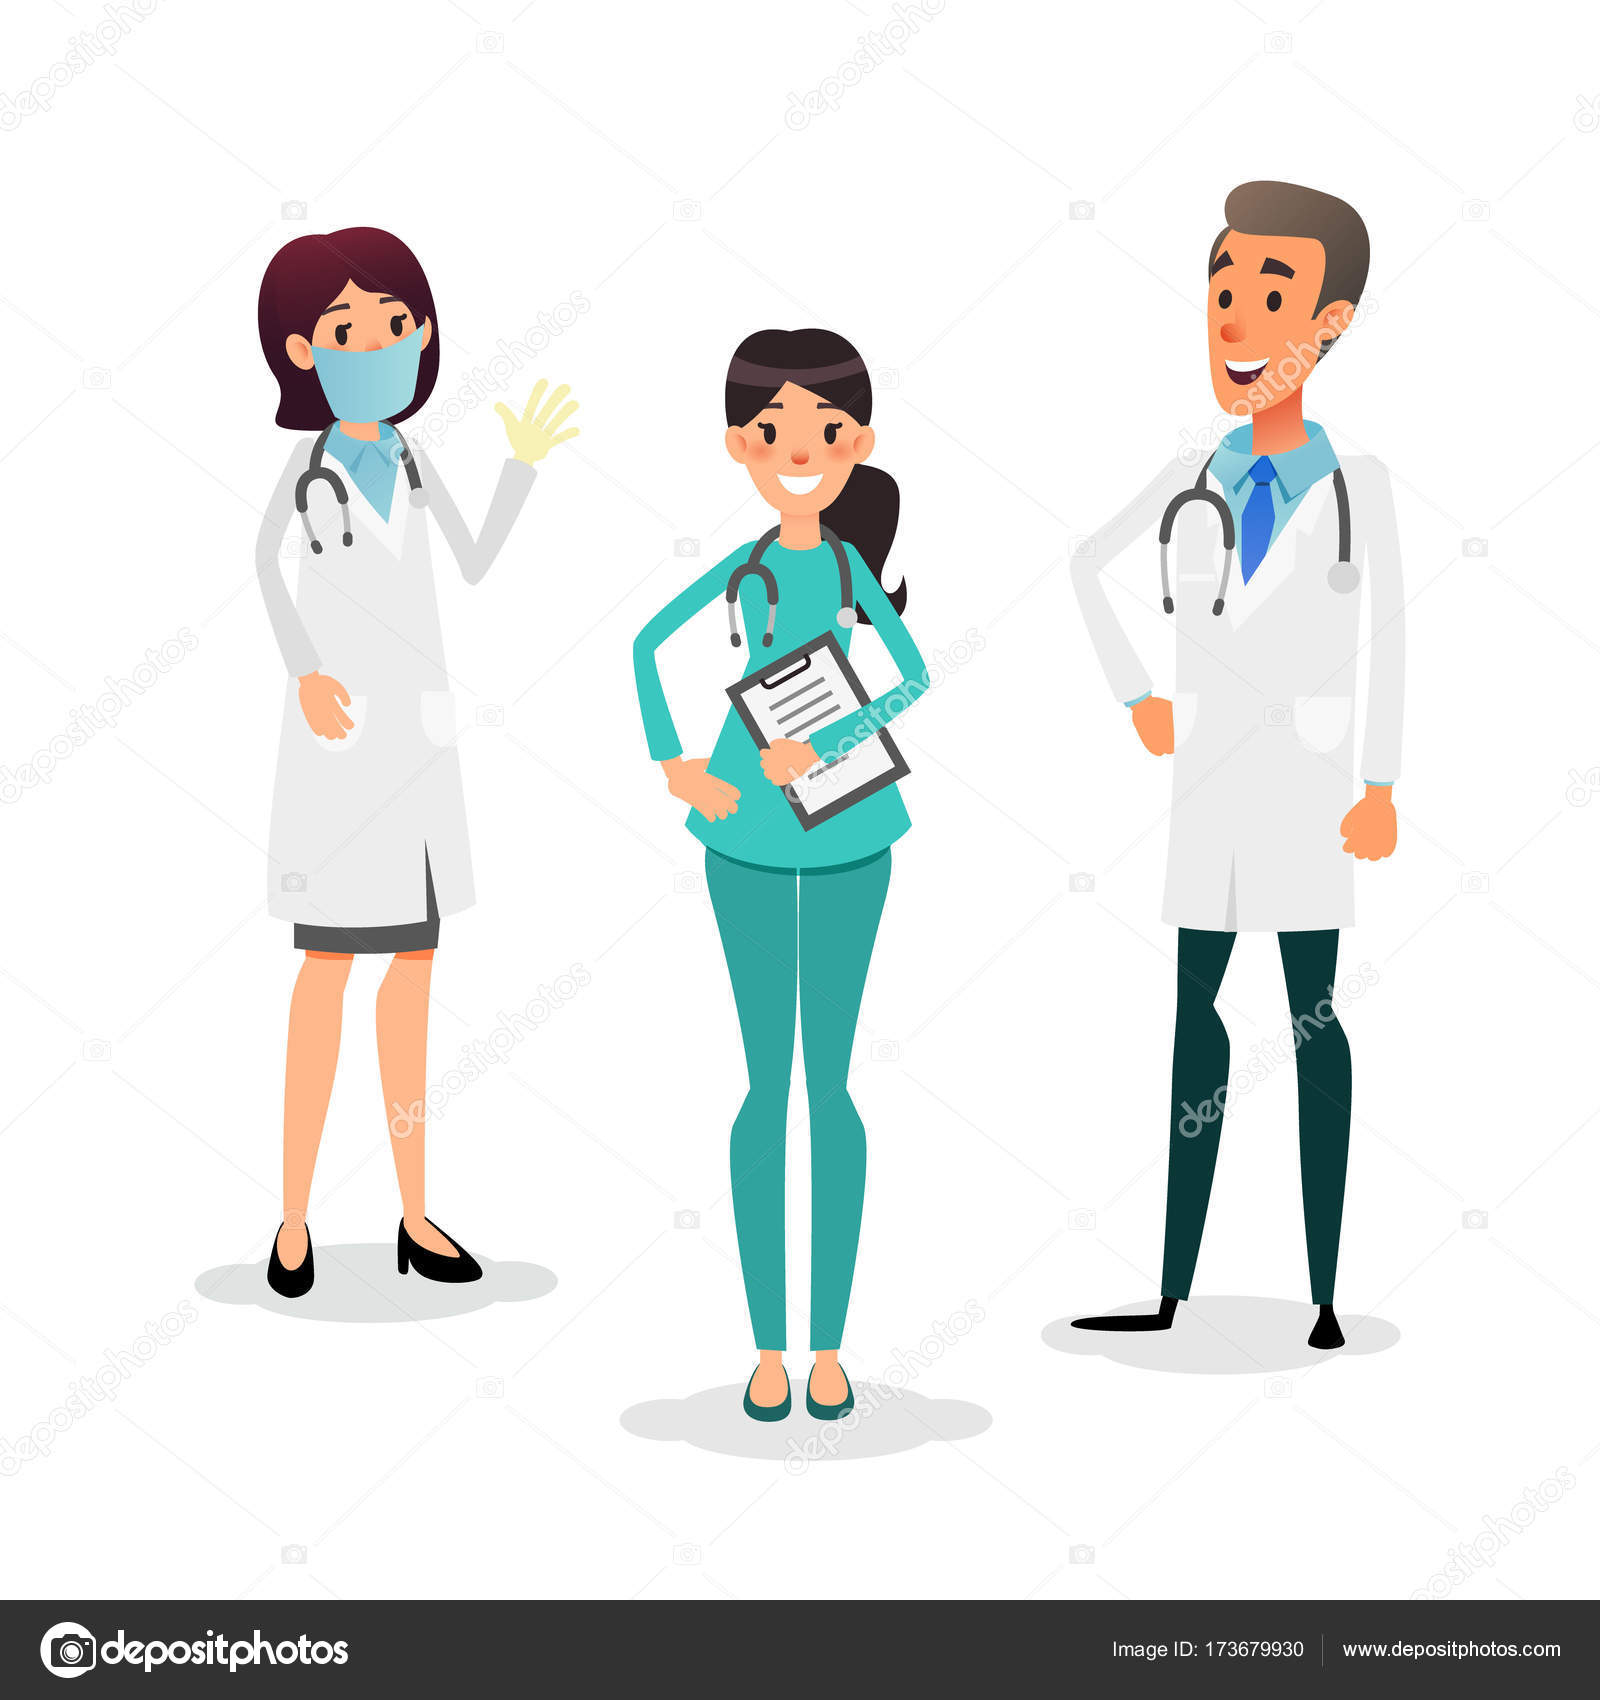 Desenho de profissão. médico, enfermeiro e cirurgião